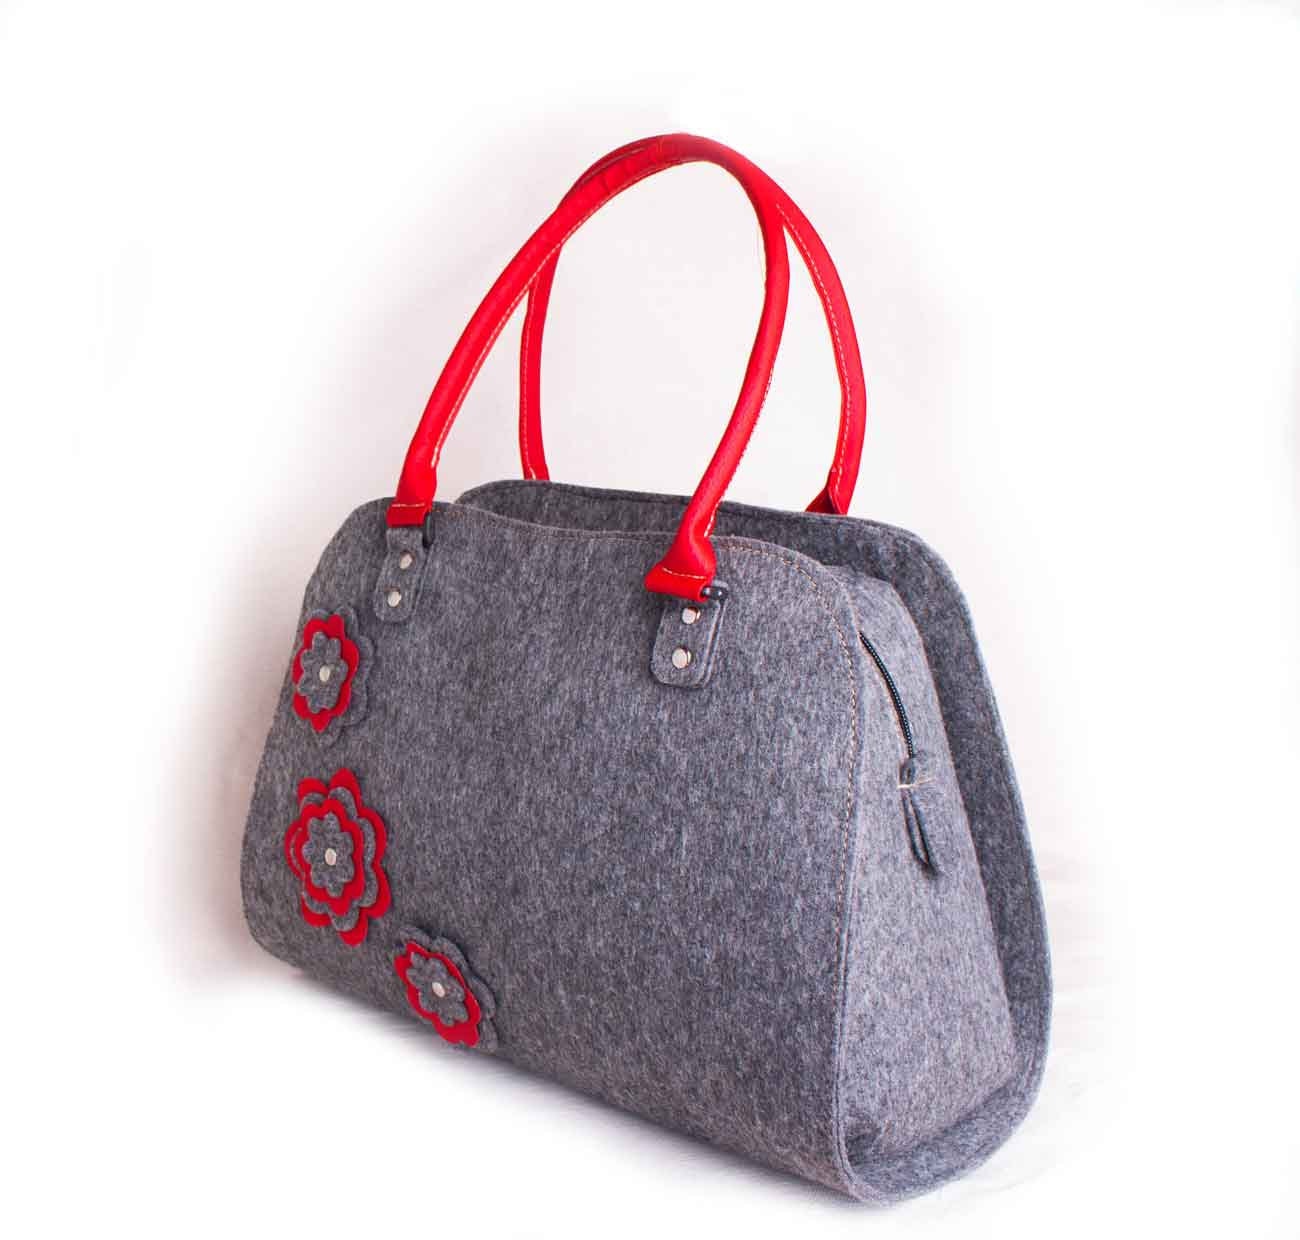 Felted Handbags Red purse Shoulder bag purse Red flower bag | Etsy